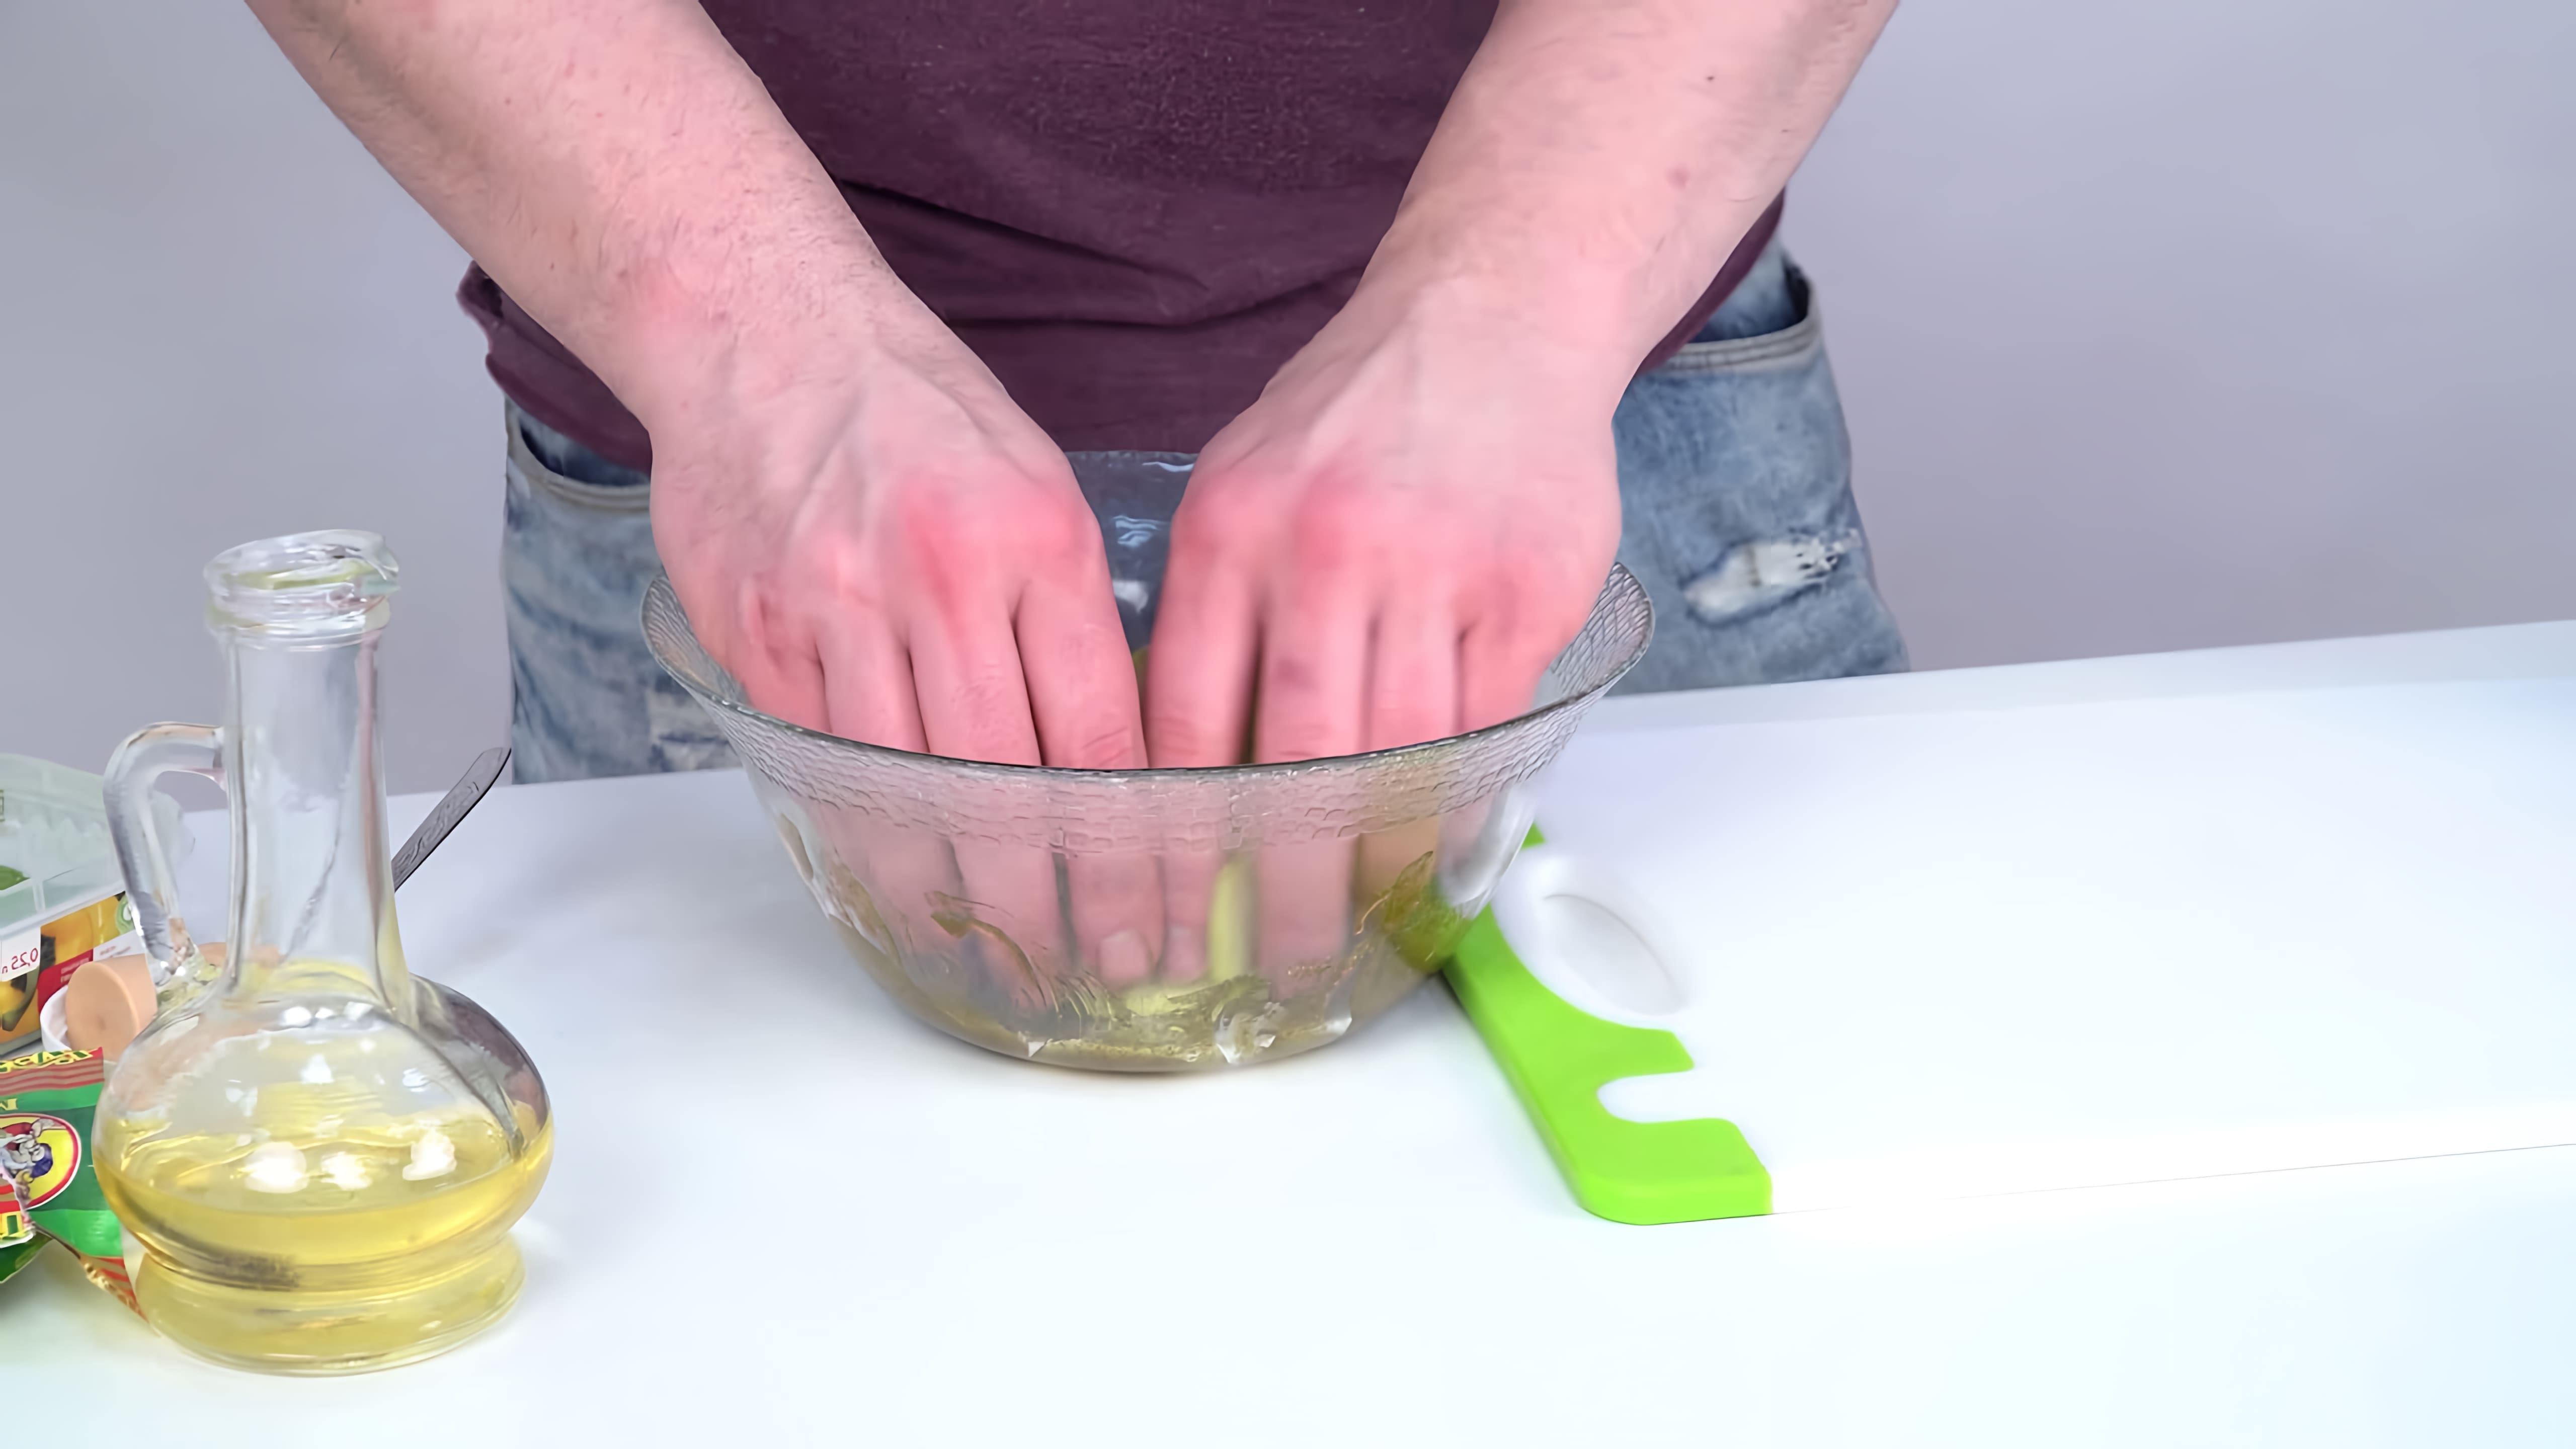 В этом видео демонстрируется процесс приготовления натуральных овощных чипсов из кабачков и баклажанов с помощью вертикального дегидратора Die Cut